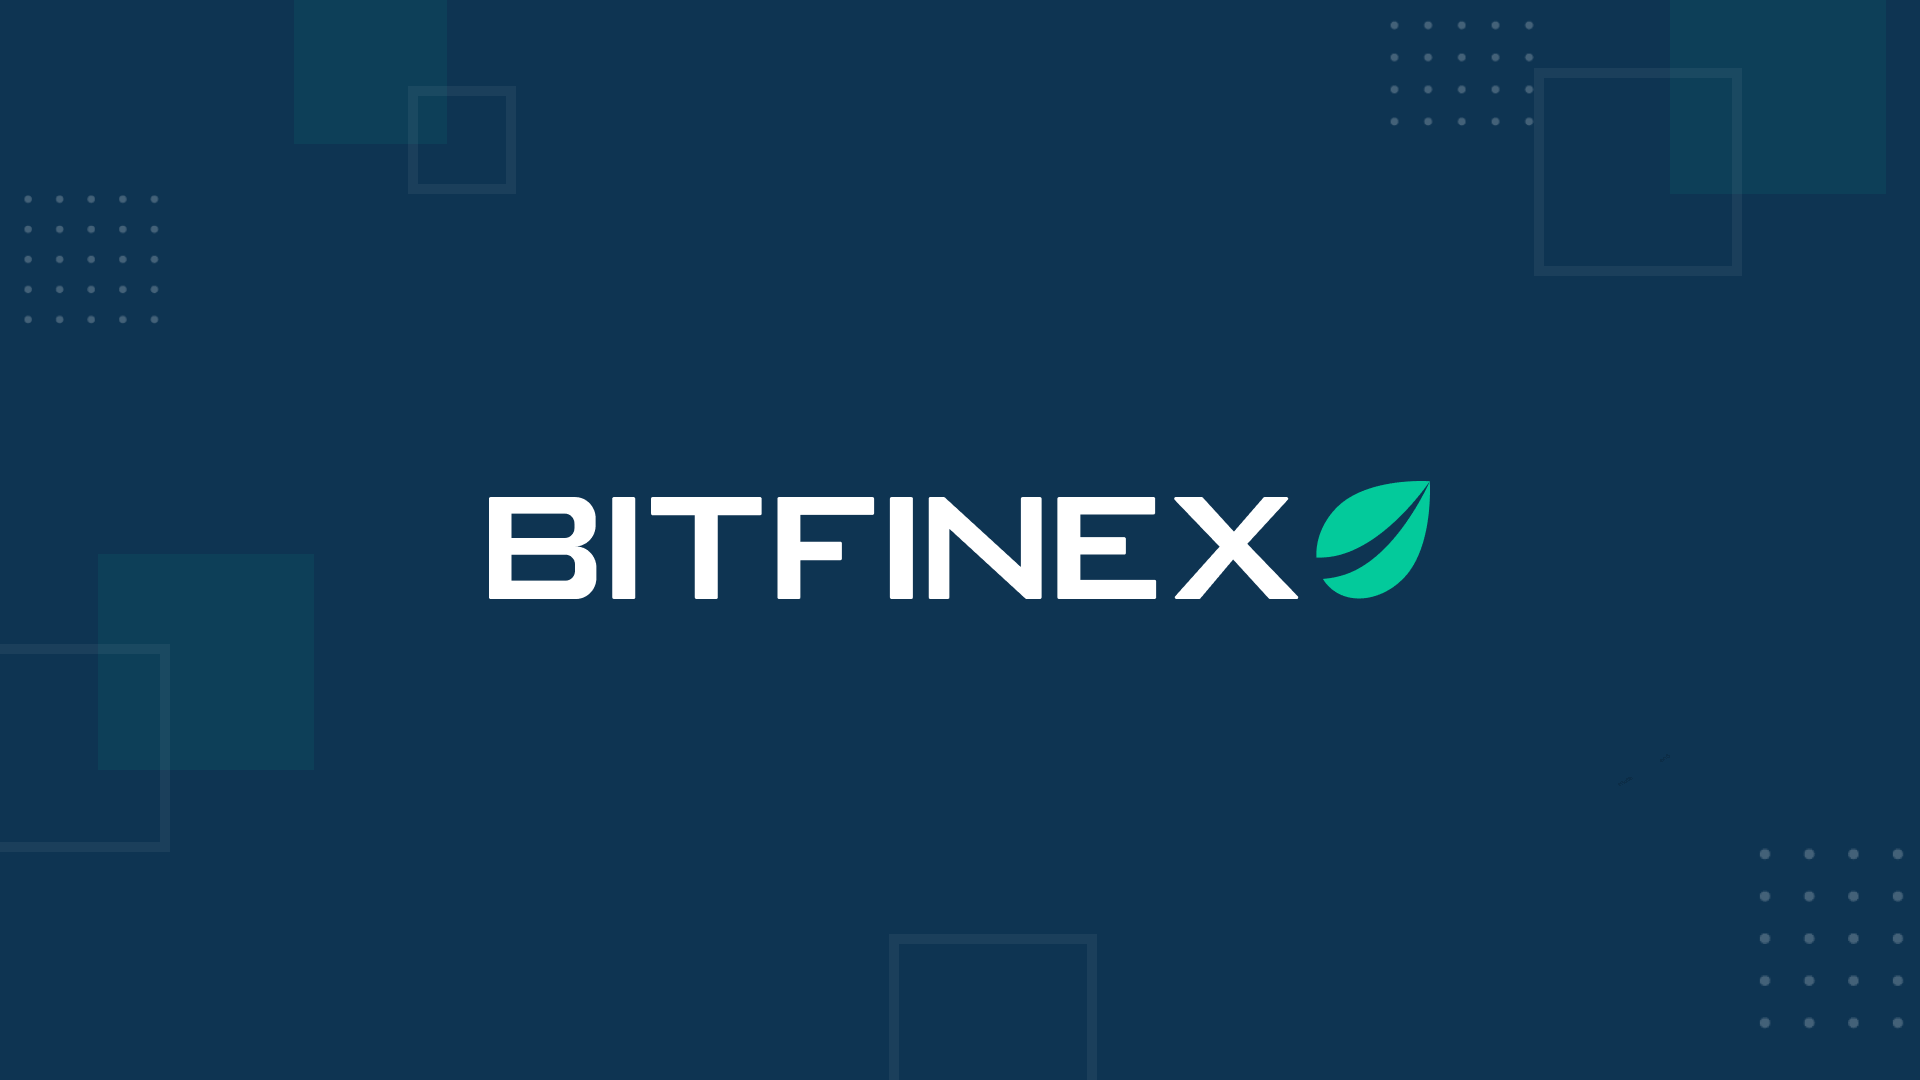 Faille de sécurité chez Bitfinex